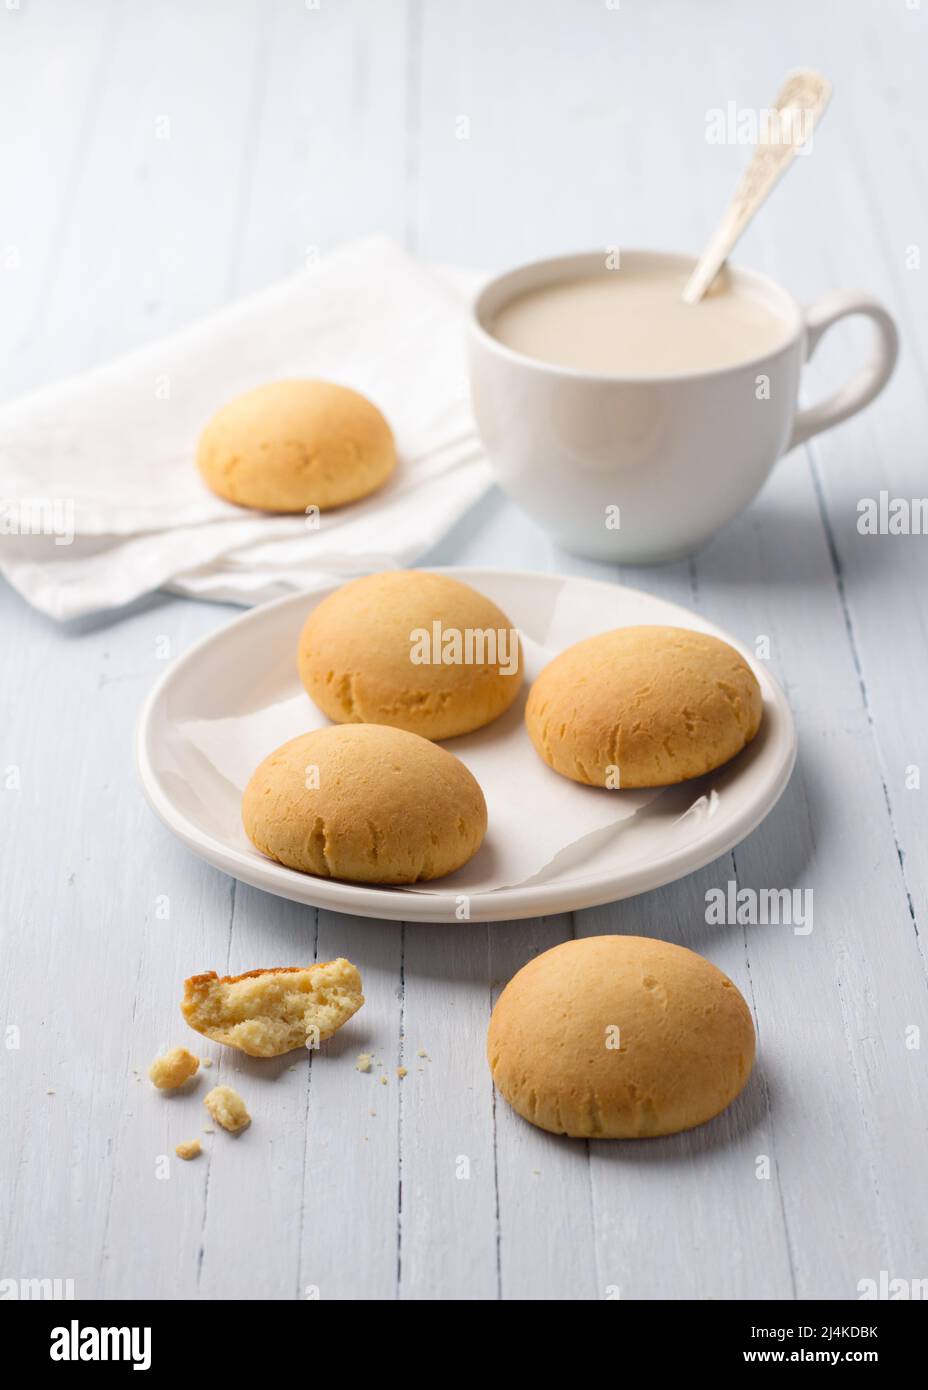 Biscotti fatti in casa senza glutine al riso casereccio e una tazza di tè con latte su sfondo chiaro Foto Stock